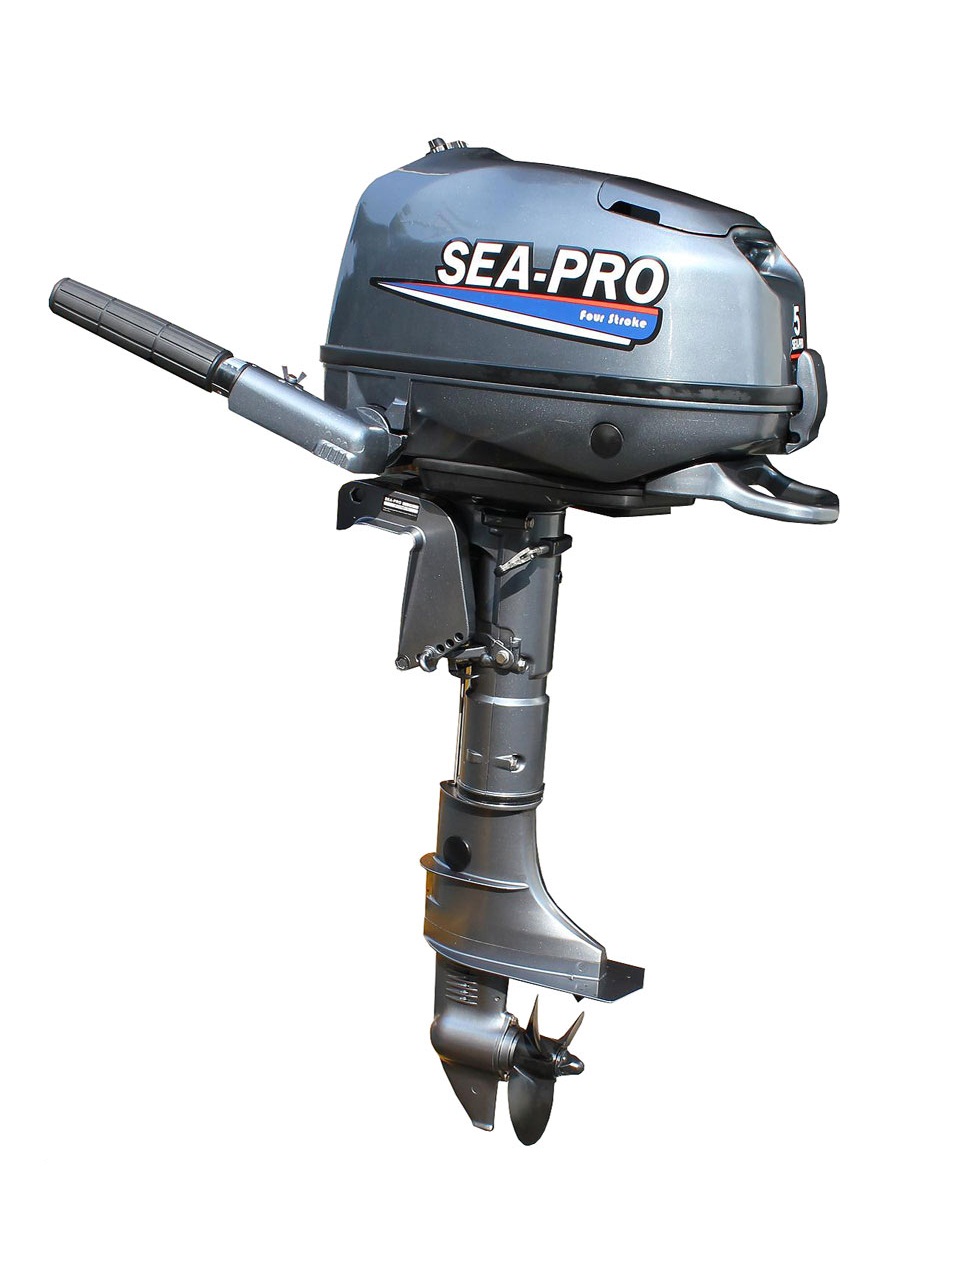 Лодочные моторы бу купить в спб. Лодочный мотор Sea-Pro f 4s. Sea-Pro мотор Лодочный t15 (s). Мотор Sea-Pro f 5s. Лодочный мотор Sea-Pro t5/s/Tarpon.